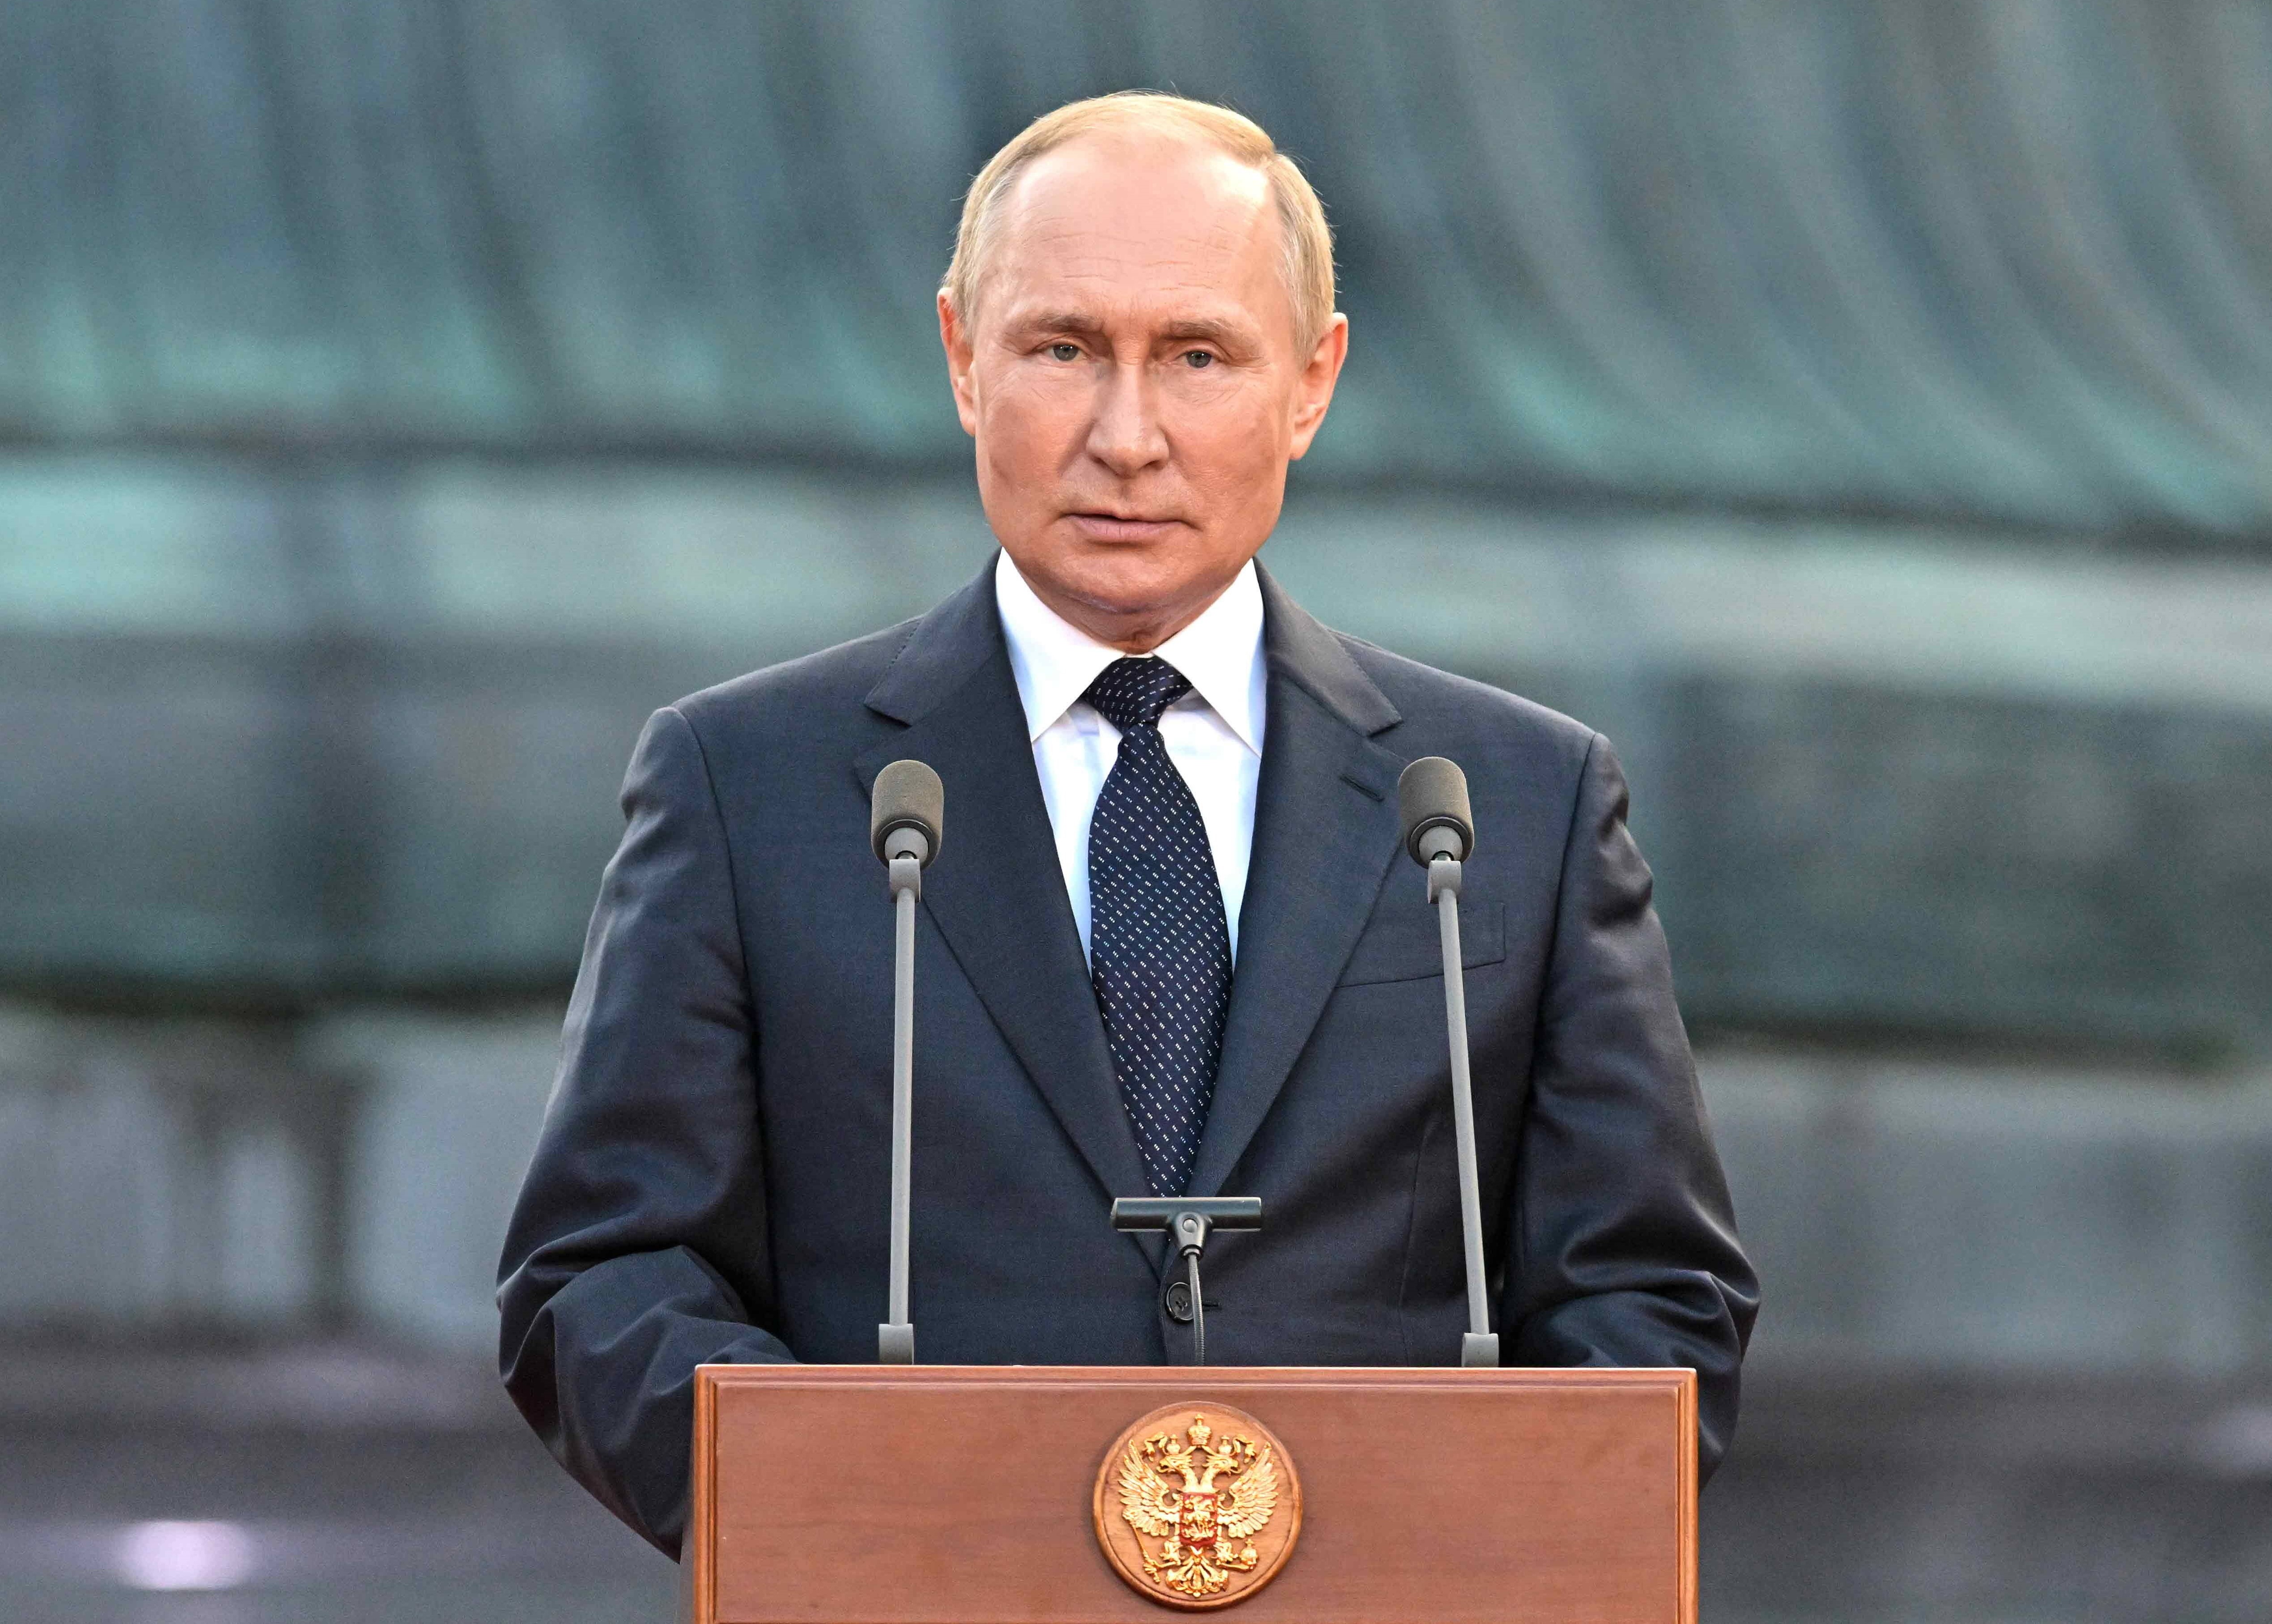 Wird Putin in Südafrika verhaftet? BRICS-Gipfel - Riskiert Putin tatsächlich an dem Treffen teilzunehmen?